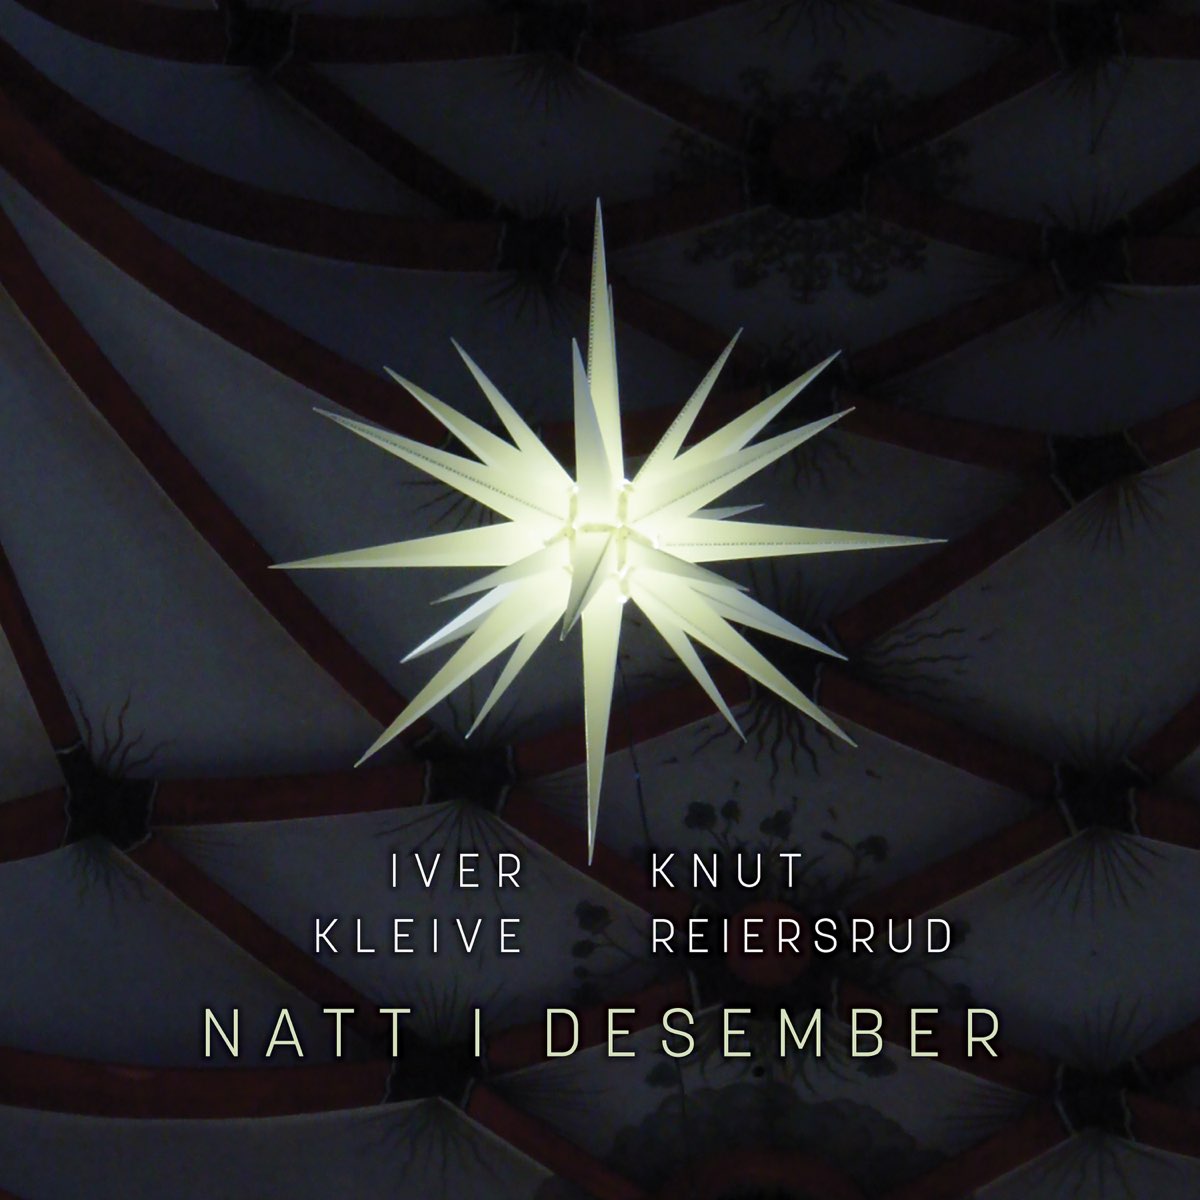 Natt i desember (Night in December) by Knut Reiersrud & Iver Kleive on  Apple Music